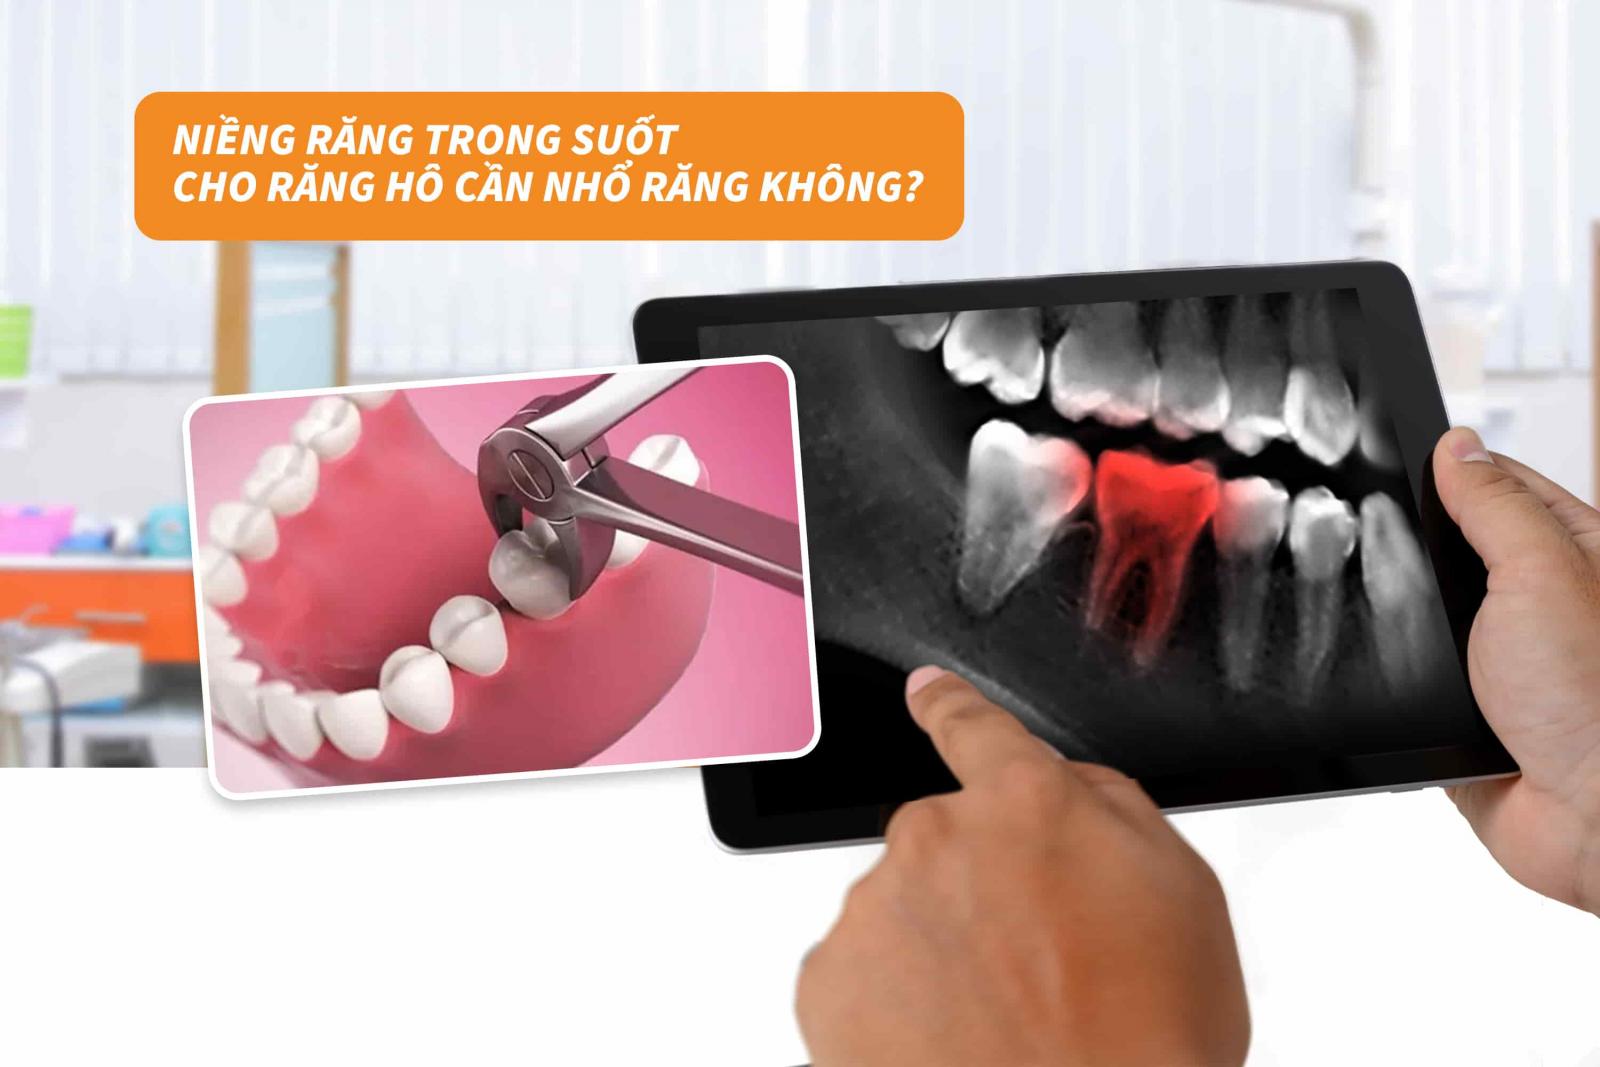 3. Niềng răng trong suốt cho răng hô cần nhổ răng không?